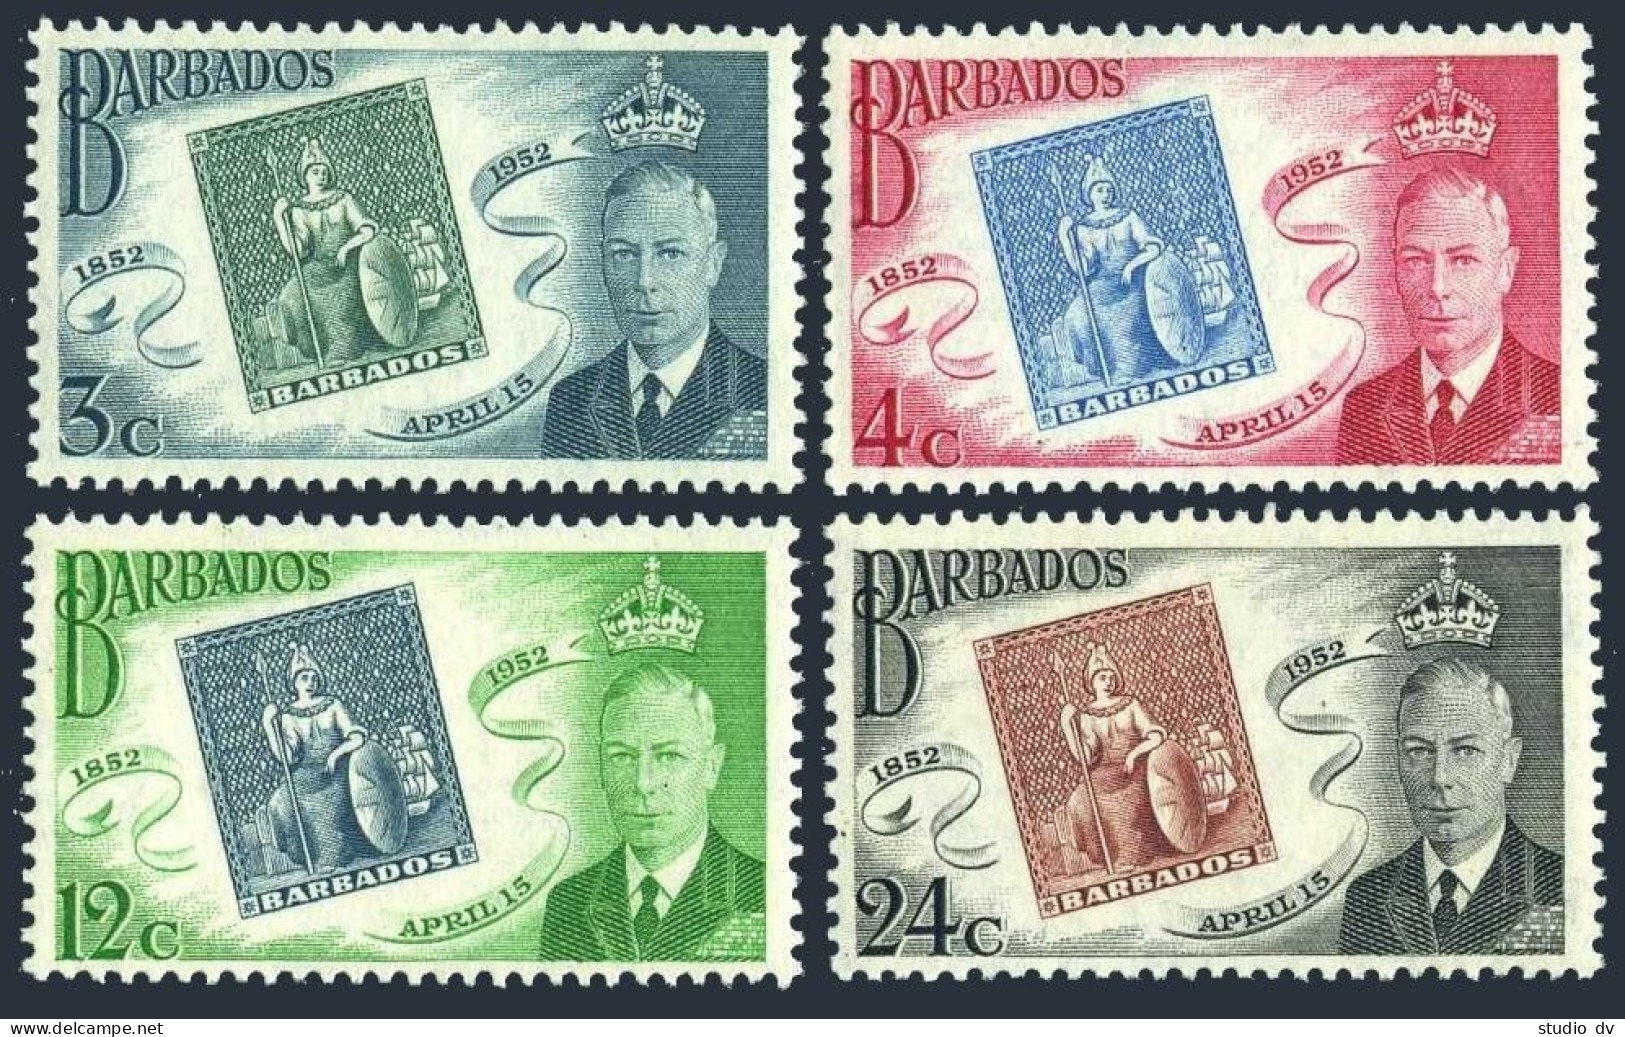 Barbados 230-233, MNH. Michel 198-201. Barbados Postage Stamps-100, 1952. - Barbades (1966-...)